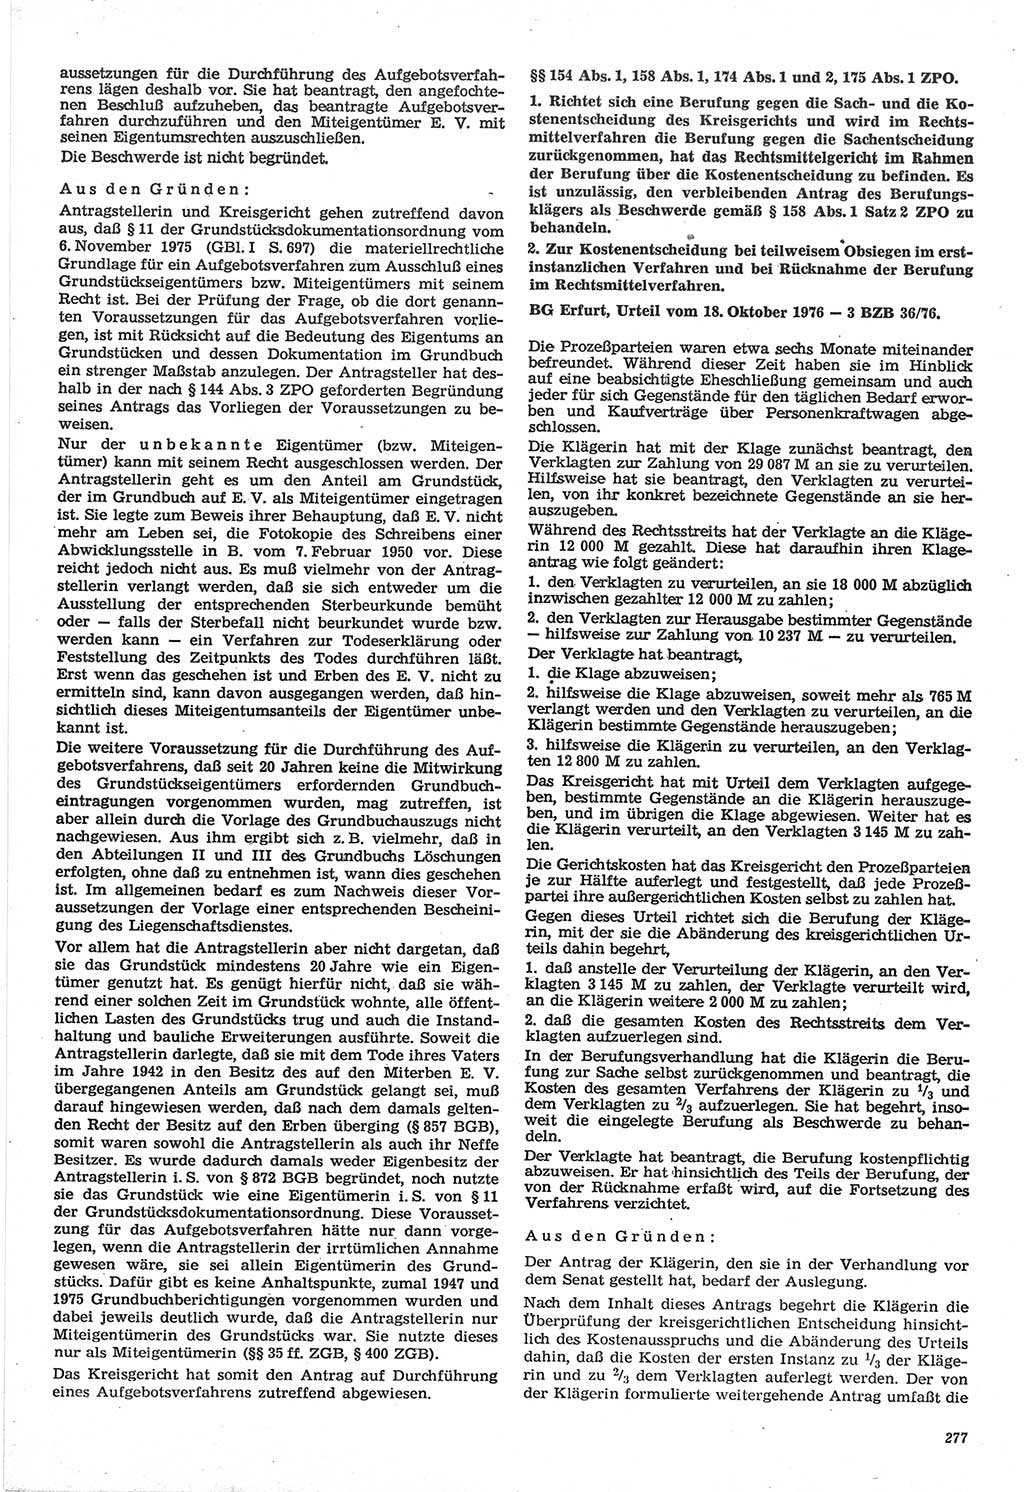 Neue Justiz (NJ), Zeitschrift für Recht und Rechtswissenschaft-Zeitschrift, sozialistisches Recht und Gesetzlichkeit, 31. Jahrgang 1977, Seite 277 (NJ DDR 1977, S. 277)